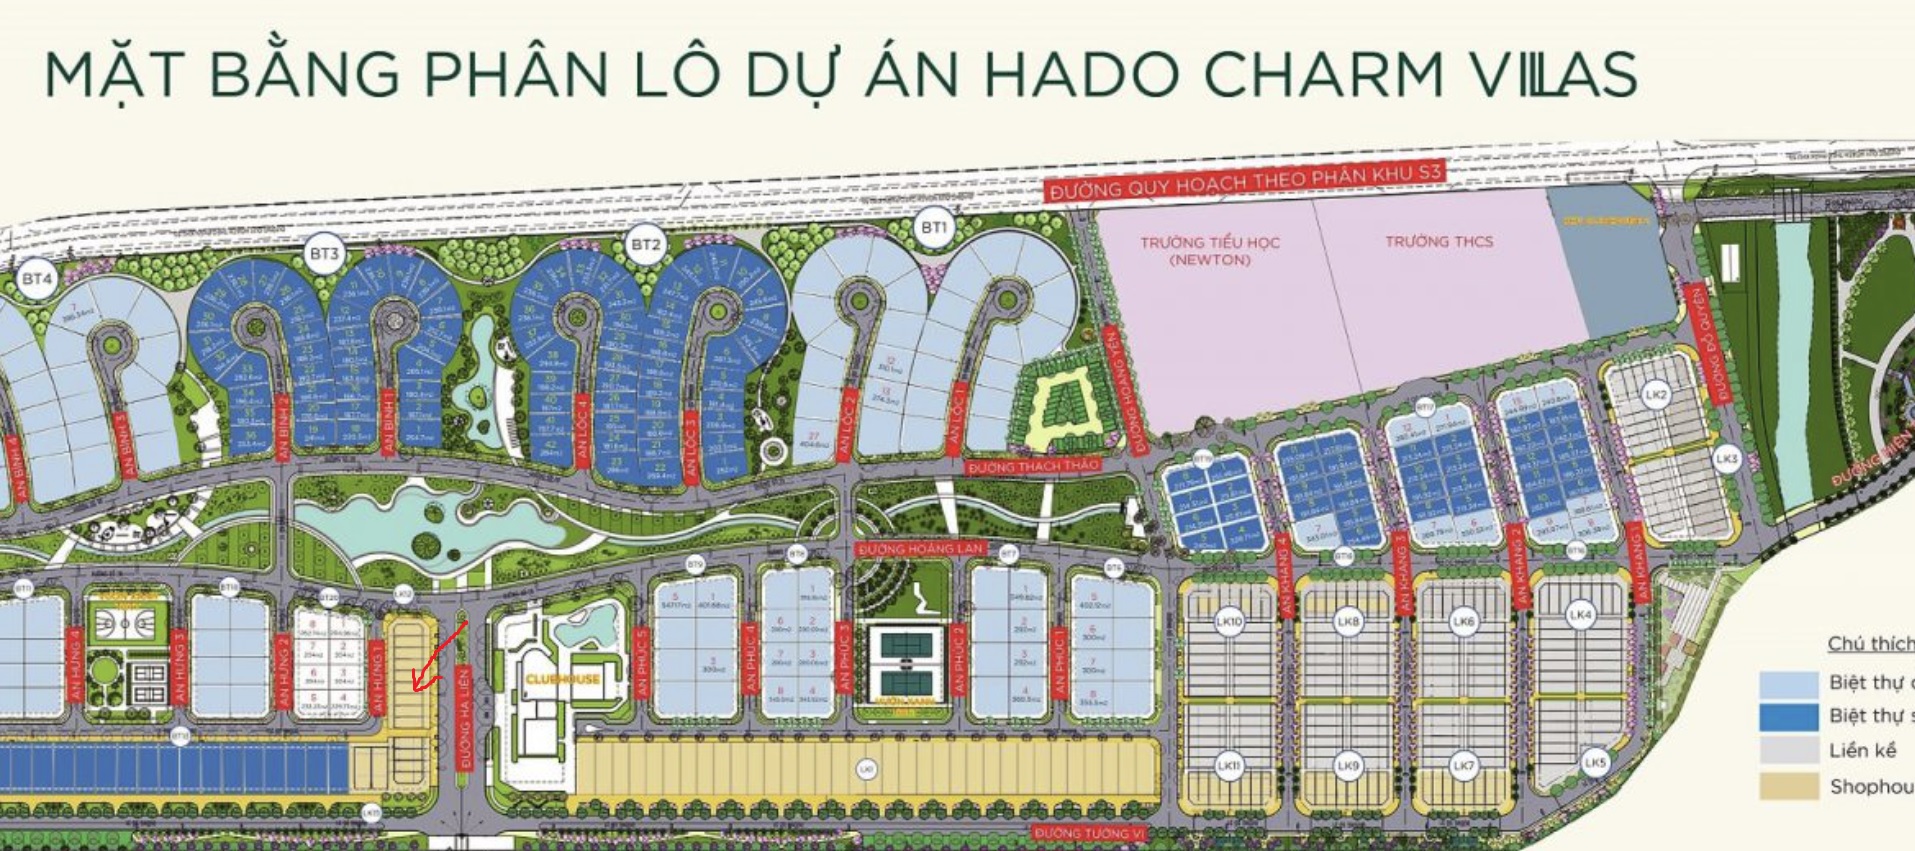 Quy hoạch đô thị Hado Charm Villas